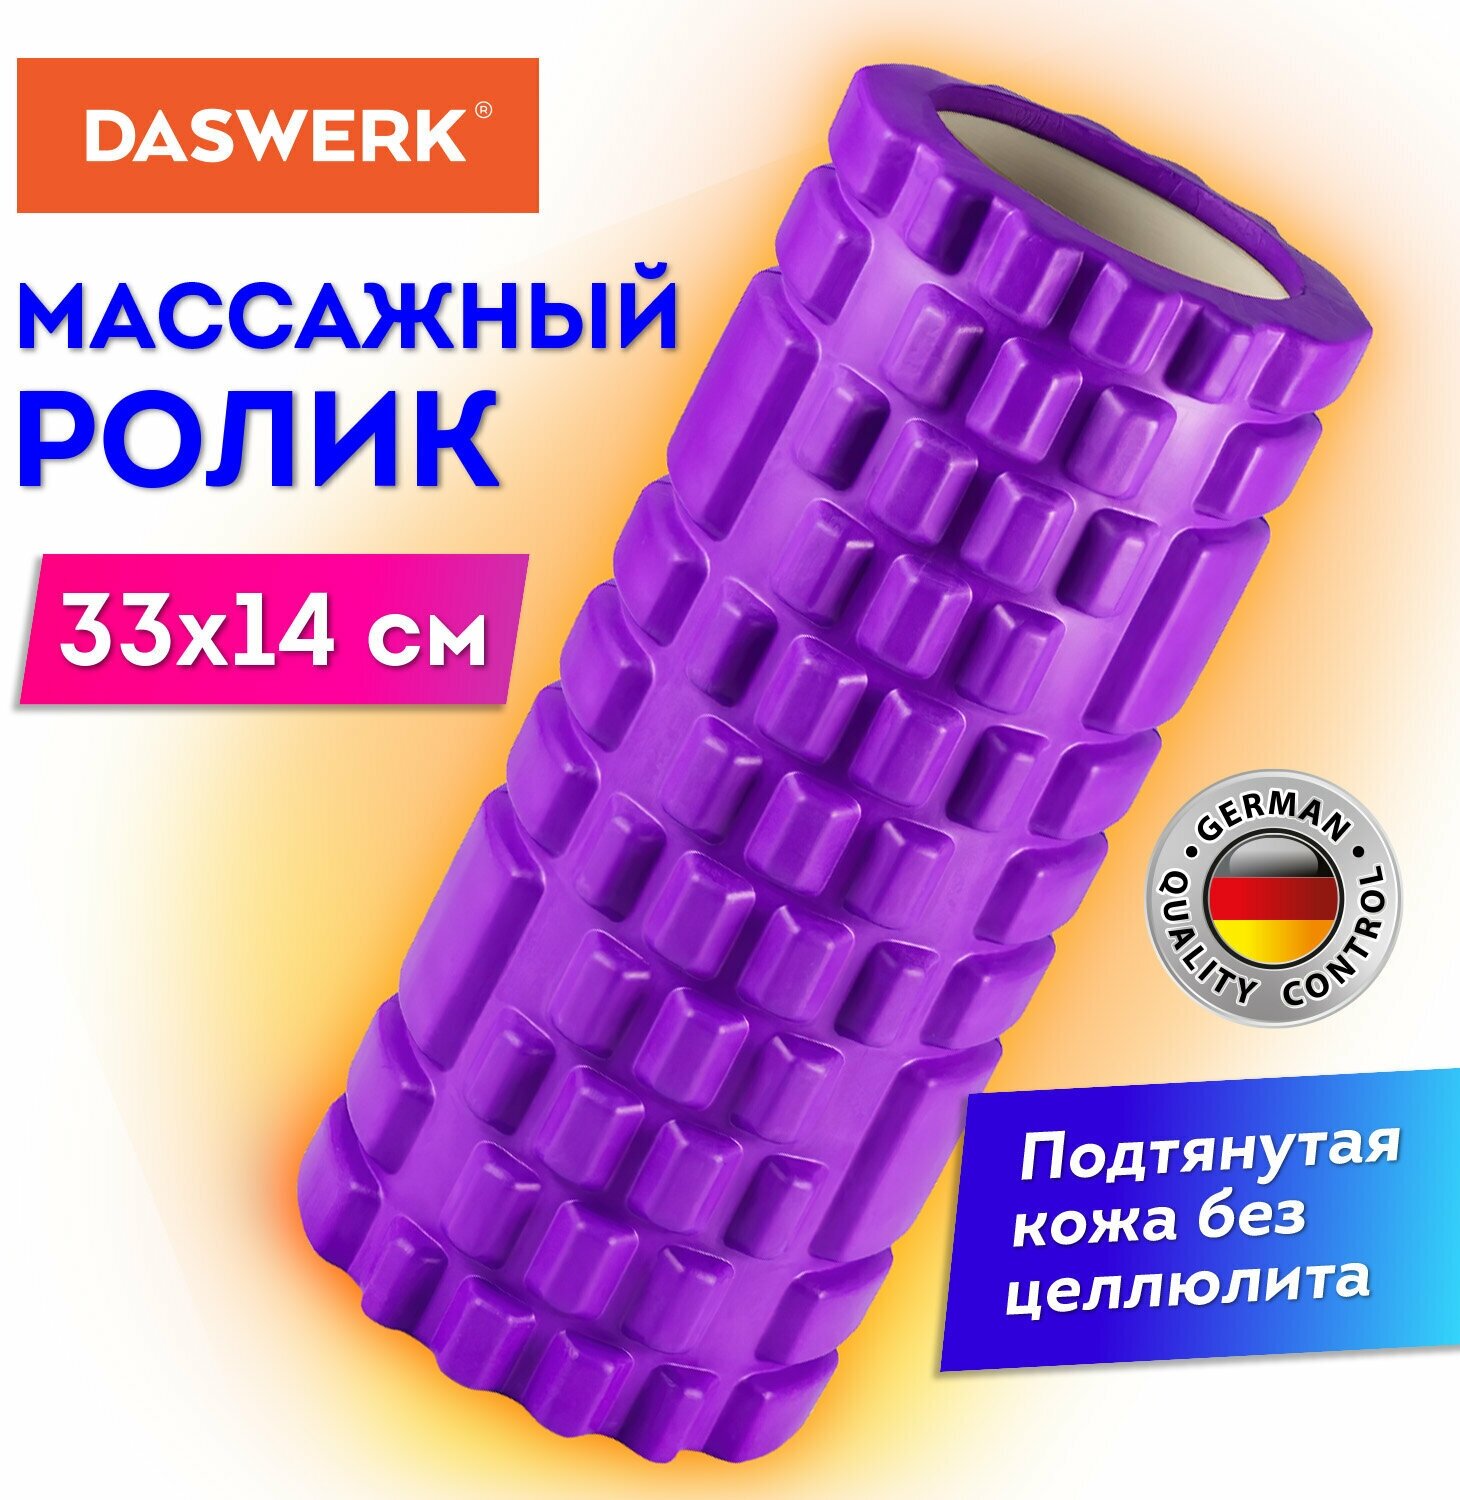 Ролик массажный для йоги, фитнеса, пилатеса, валик массажный 33*14 см, Eva, фиолетовый, с выступами, Daswerk, 680023